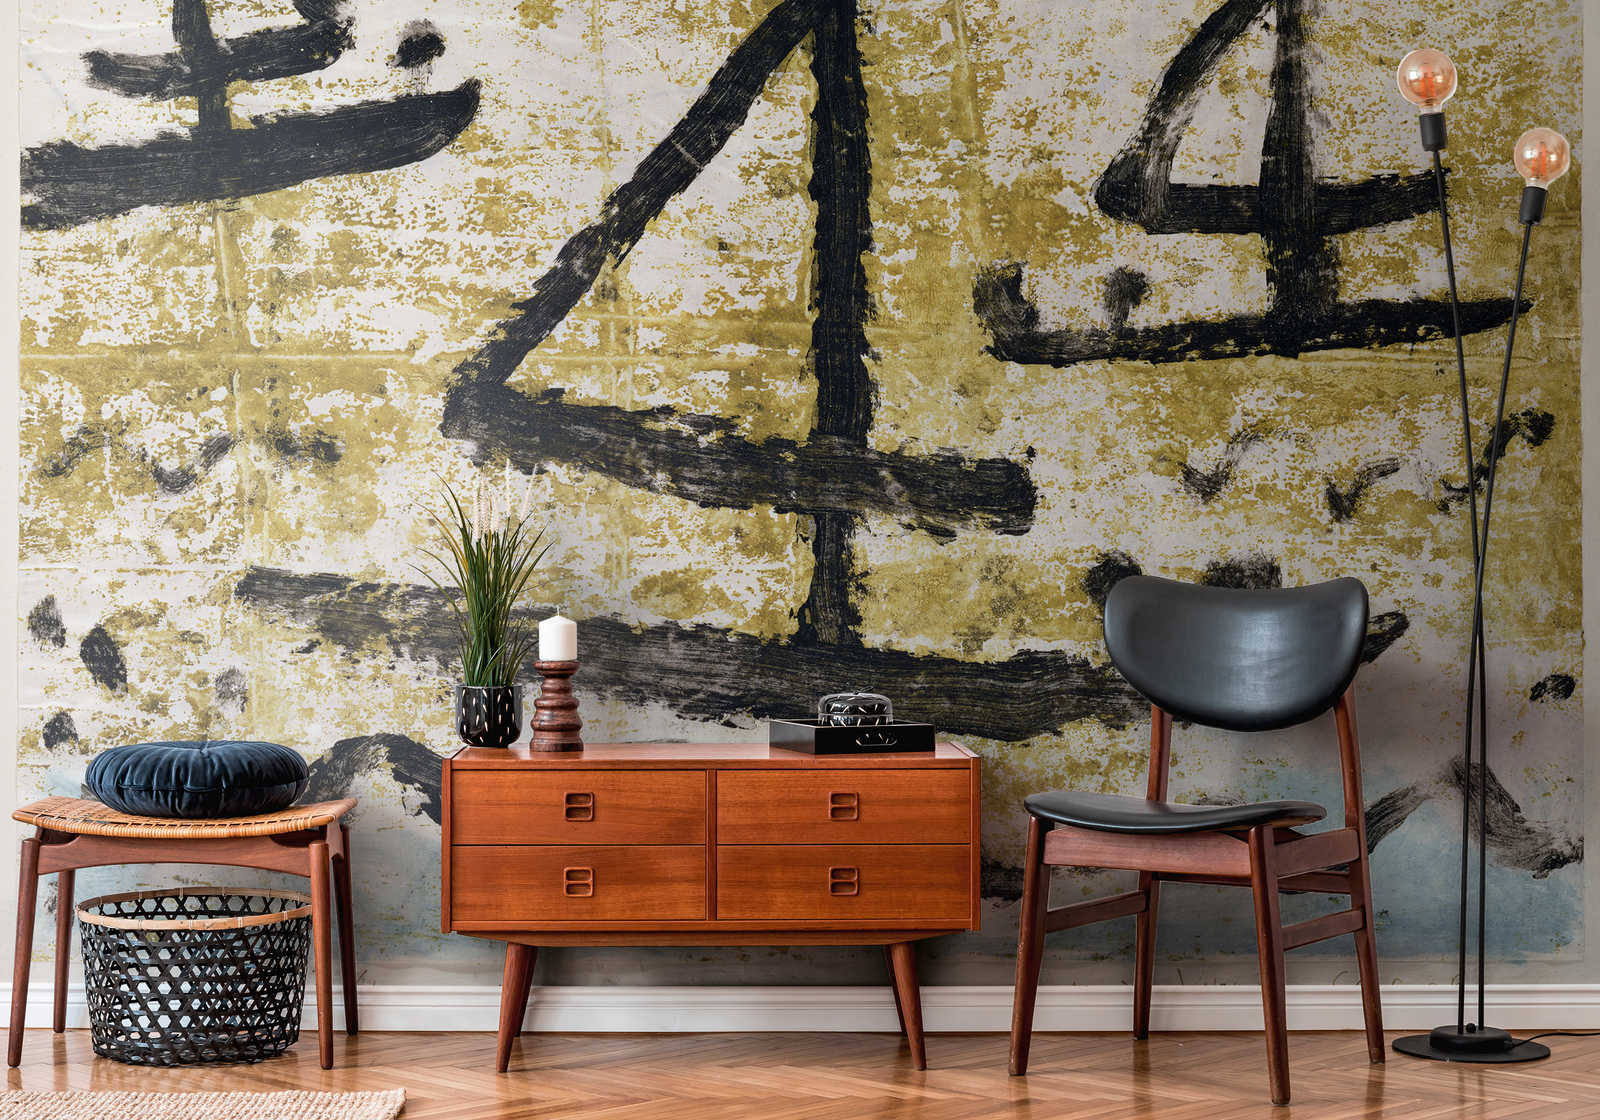             Zeilschepen" muurschildering van Paul Klee
        